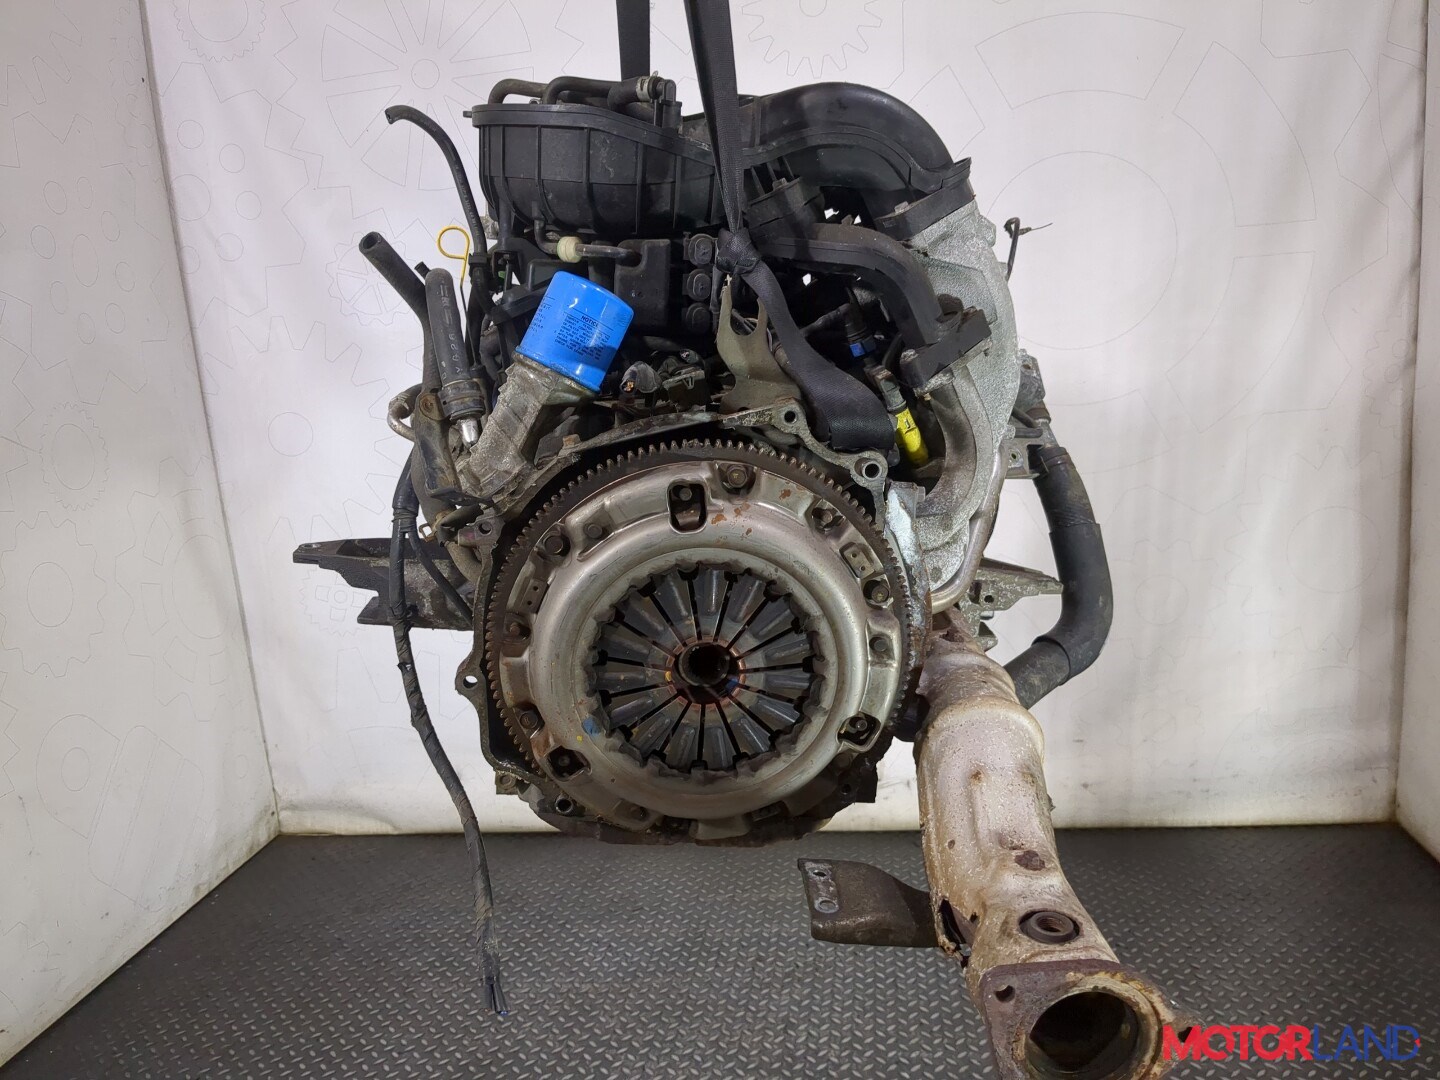 Показано, как теряет мощность роторный мотор Mazda RX-8